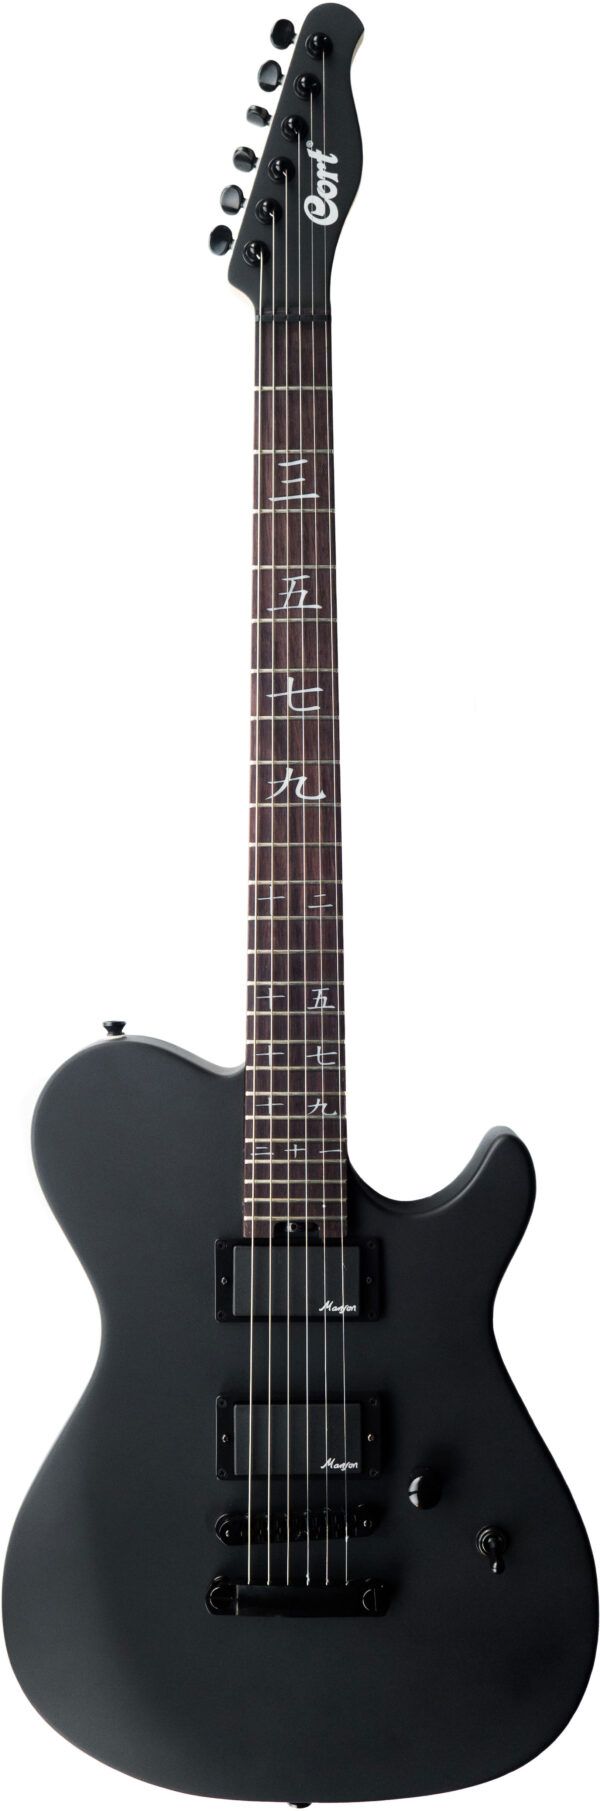 GUITARRA ELÉCTRICA TL Guitarra eléctrica de diseño clásico diseñada por Hugh Manson . Cuerpo de tilo americano